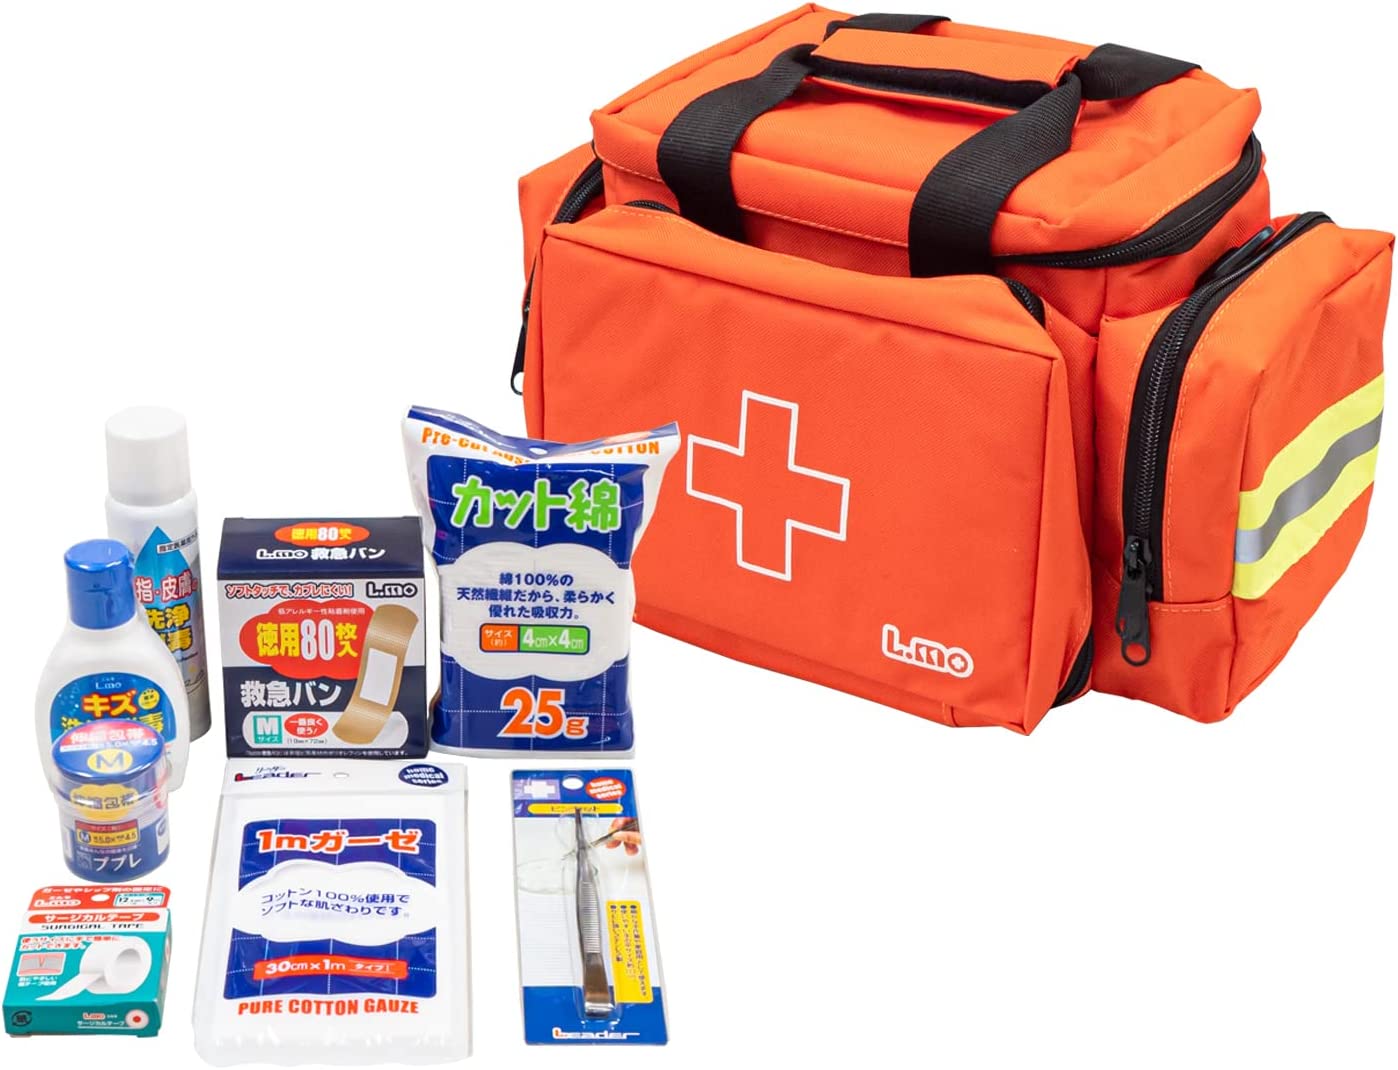 エルモ救急バッグMサイズ 衛生材料セット付 救急バッグ 送料無料